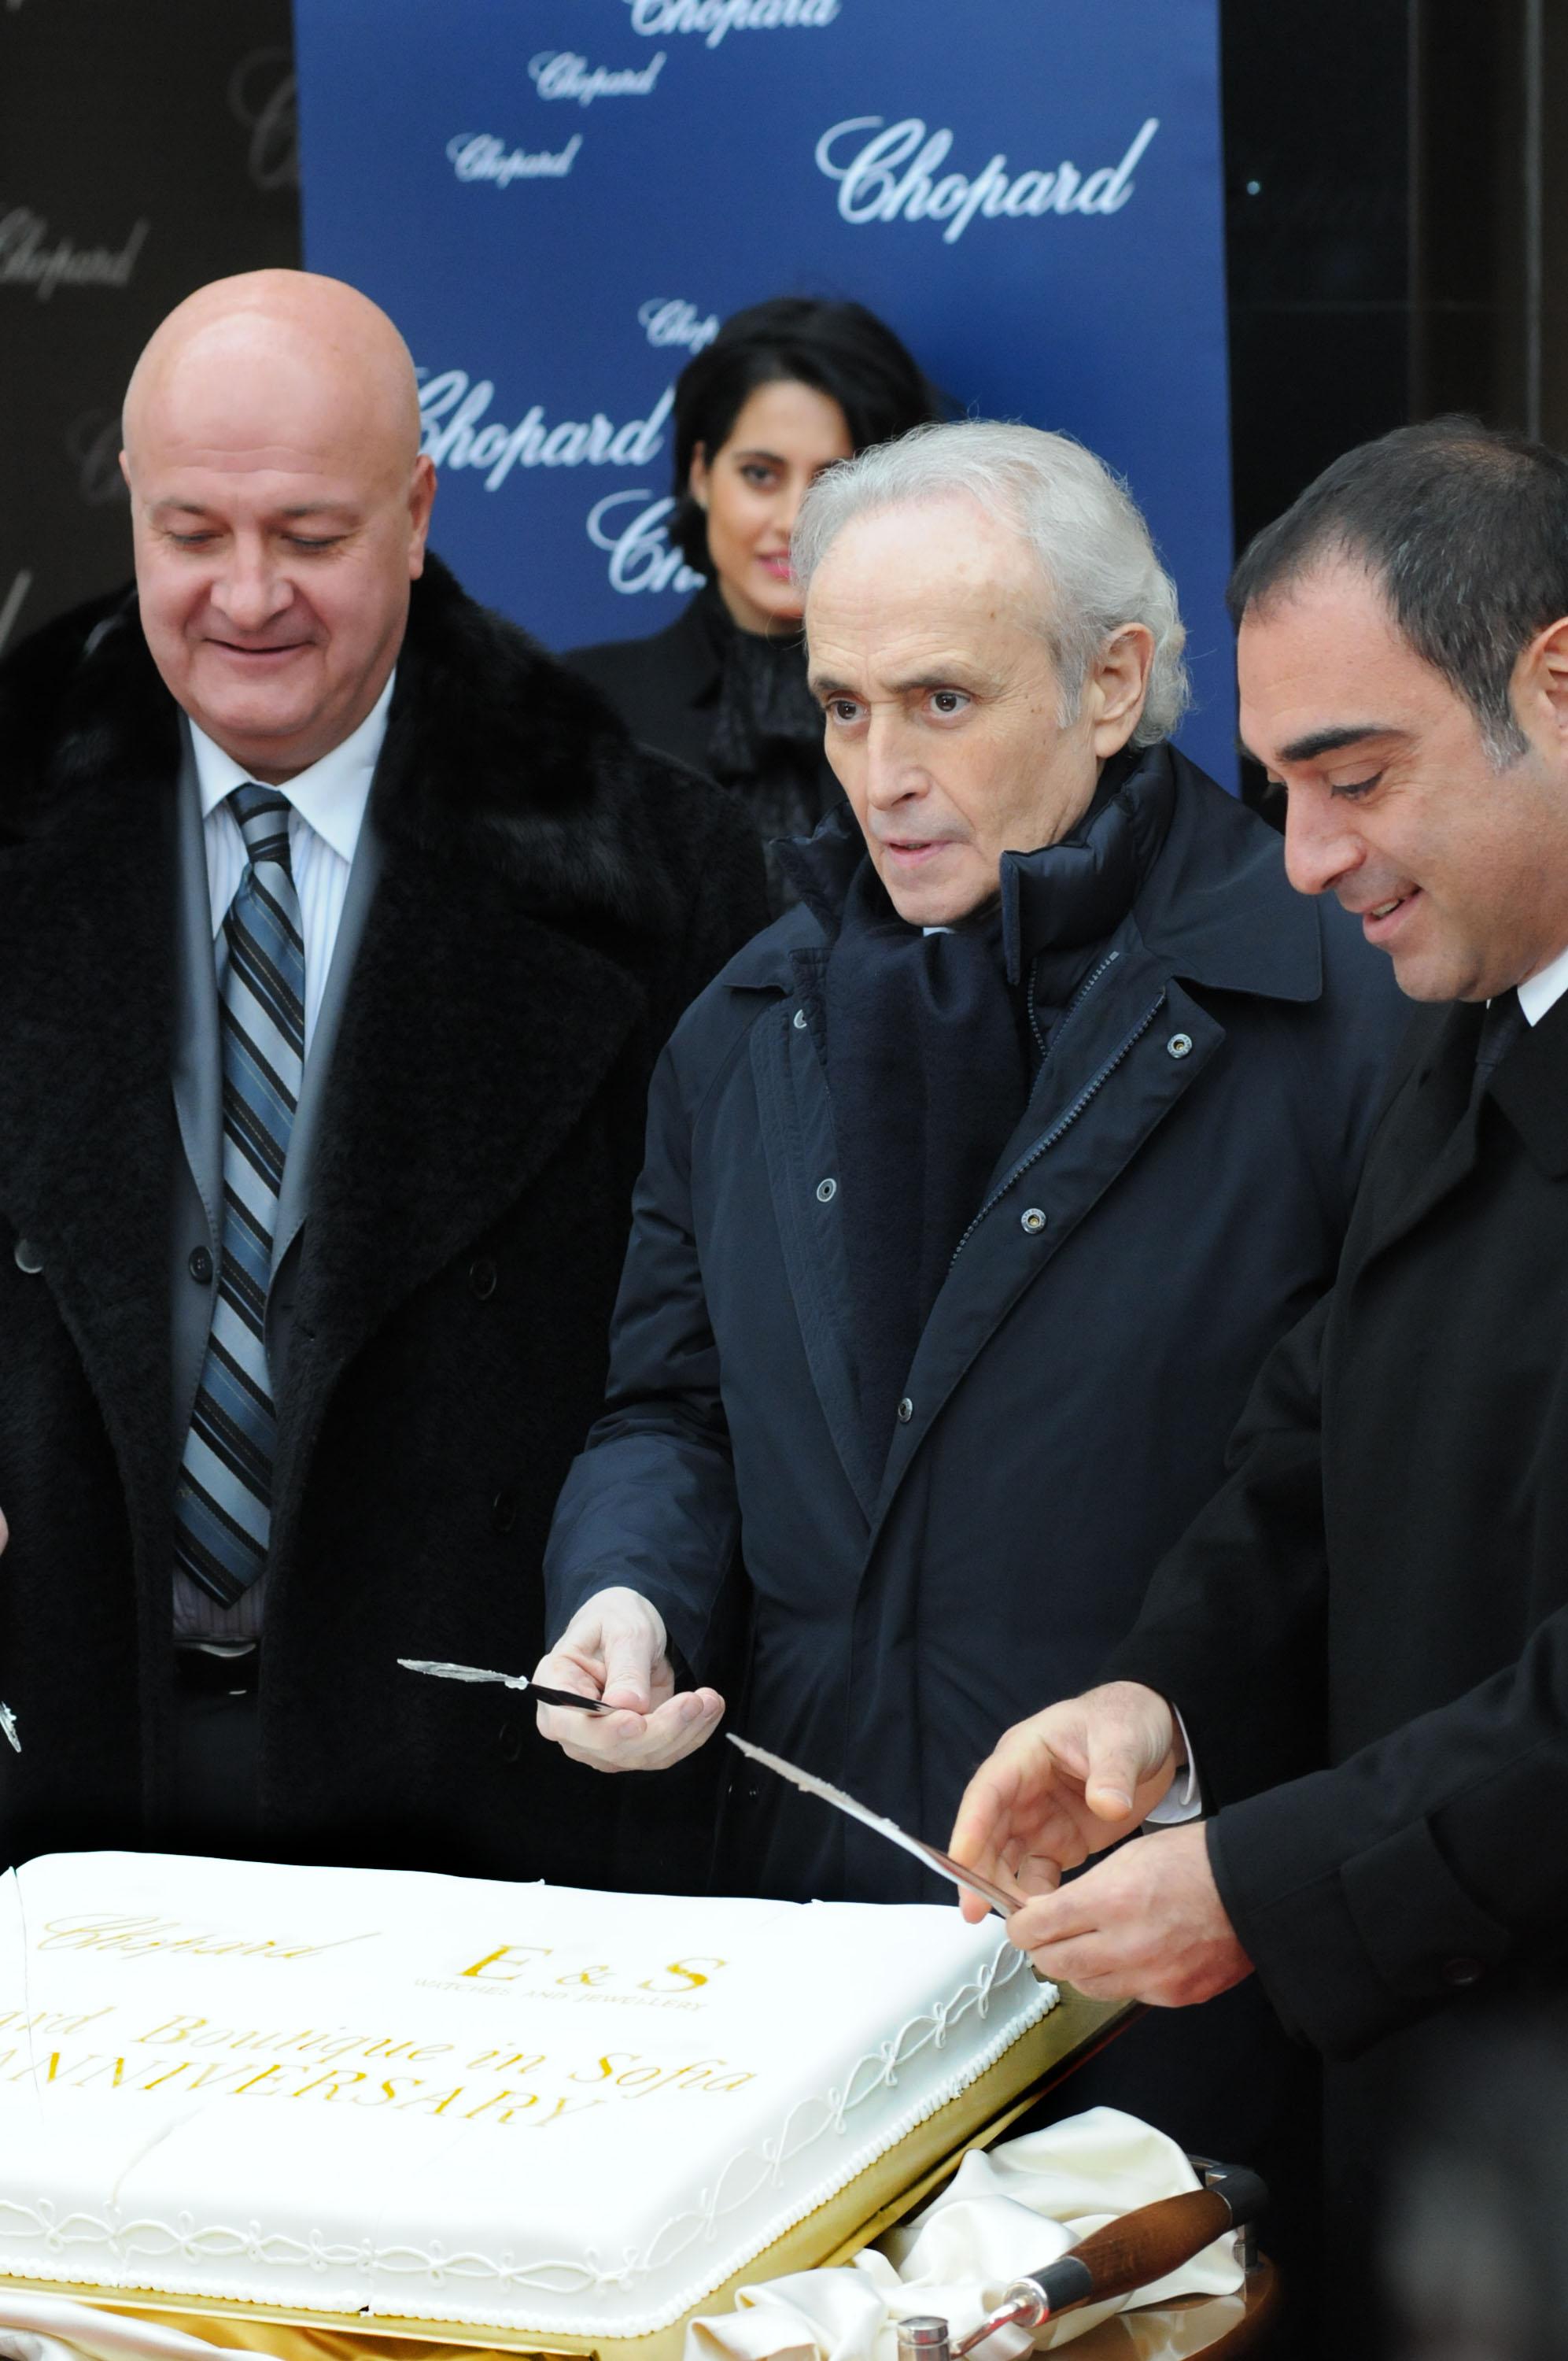 Хосе Карерас, заедно със Стефан Шарлопов и Ерик Тепеликян - съсобственици на бутик Chopard